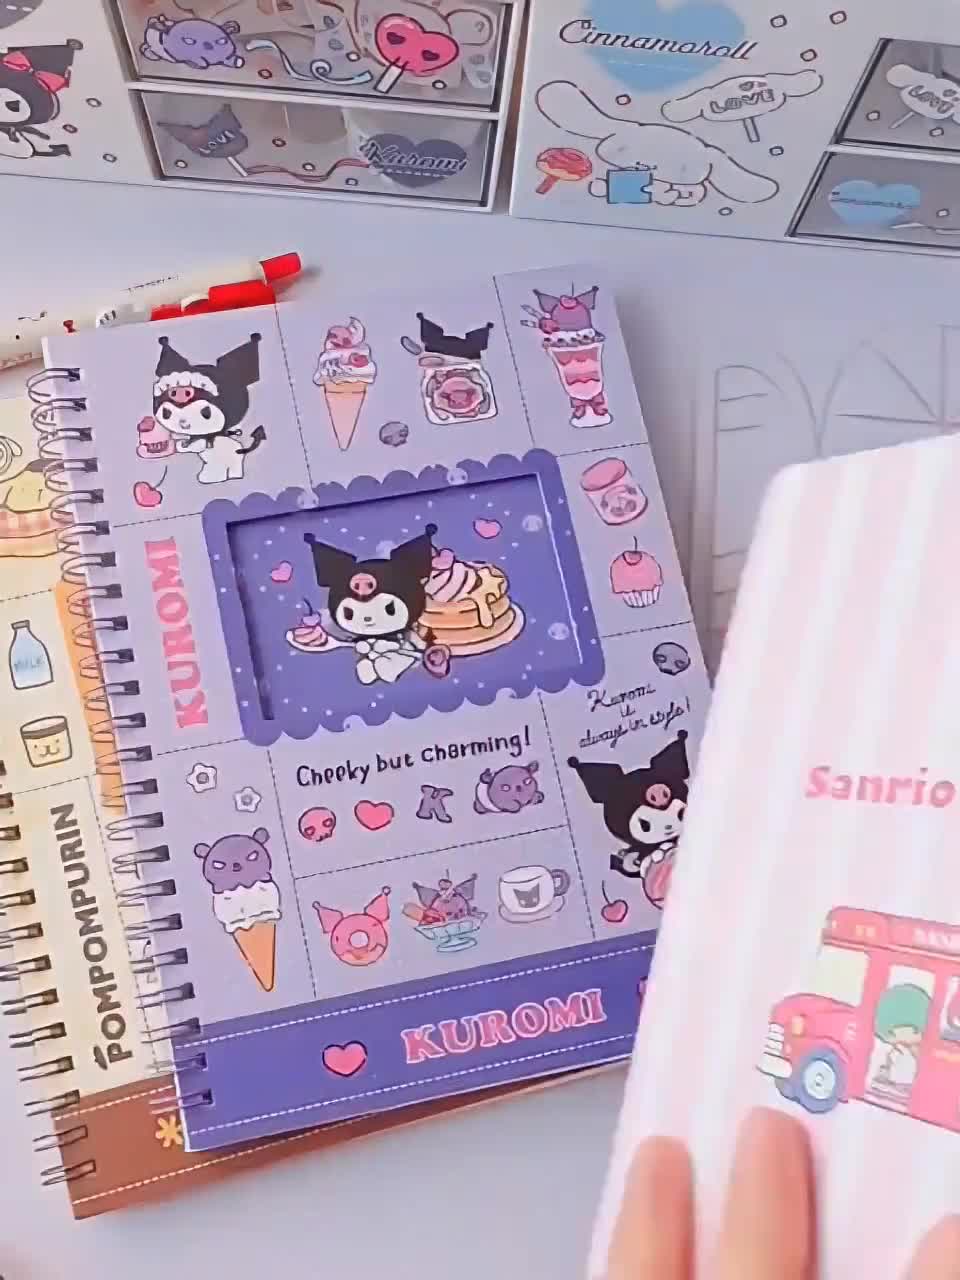 Sanrio Hello Kitty Sac À Dos, Sac D'école Avec Chaîne Étoile, Parfait Pour  Les Étudiants